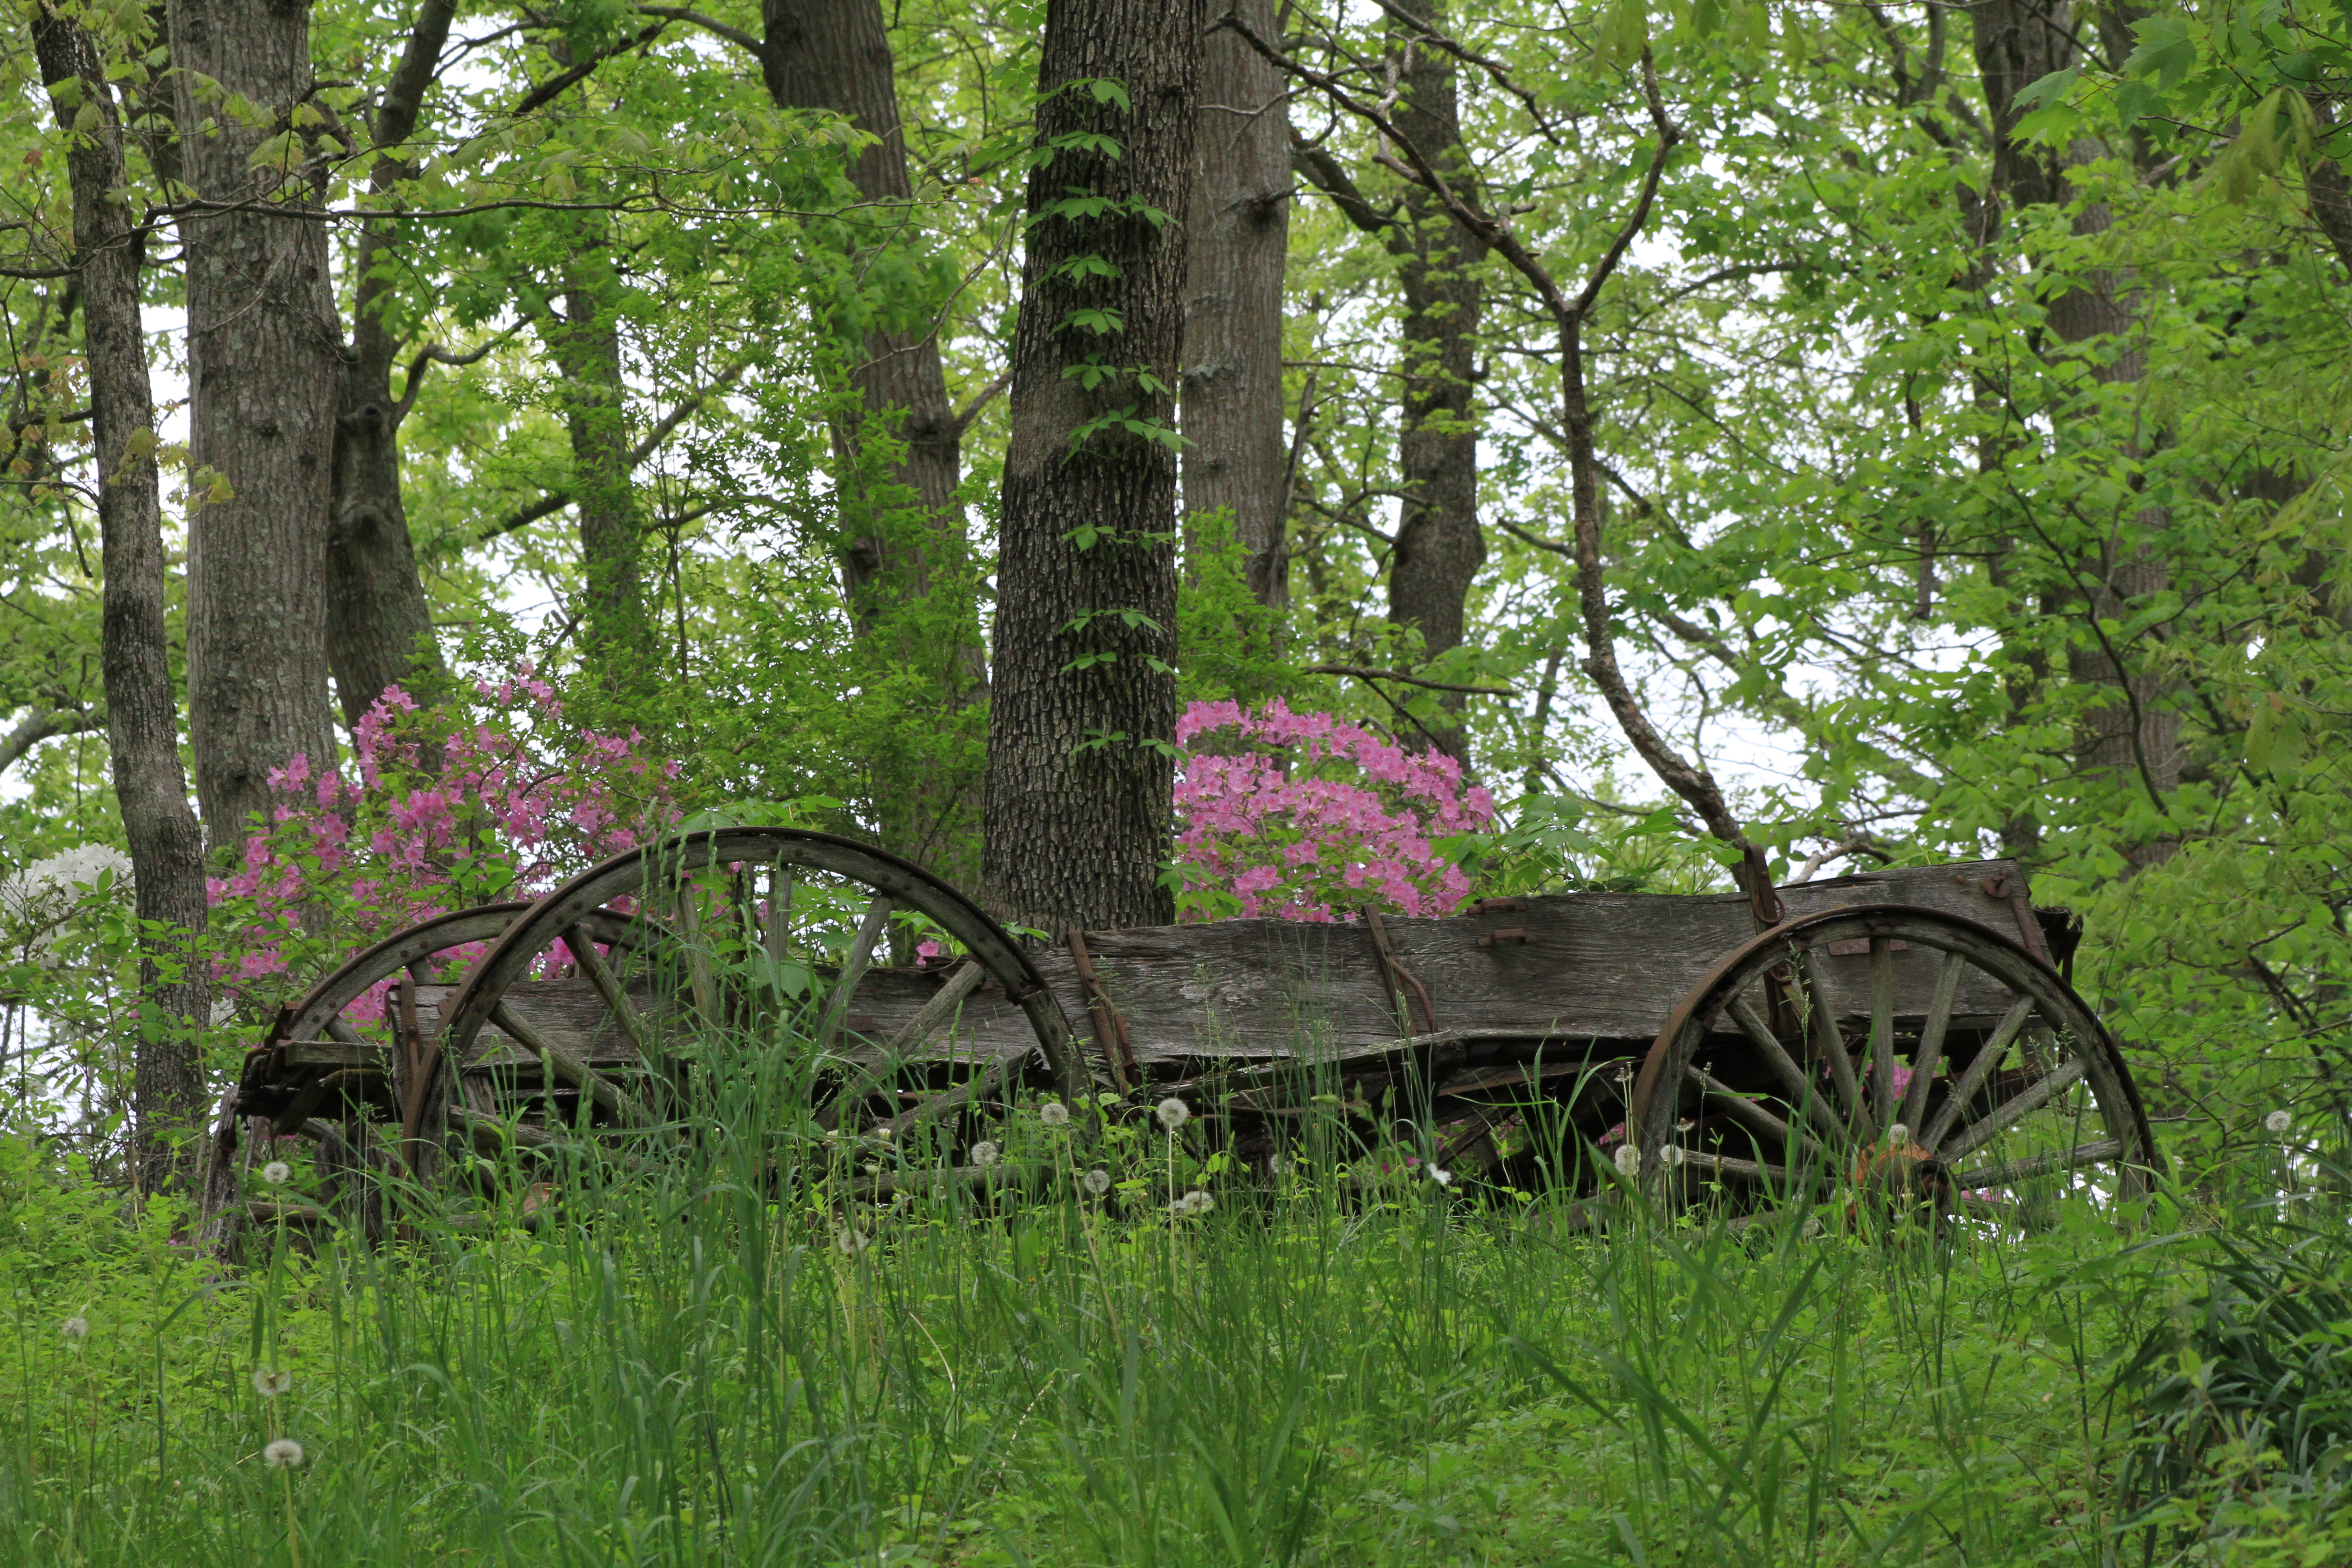 Abandoned horse wagon